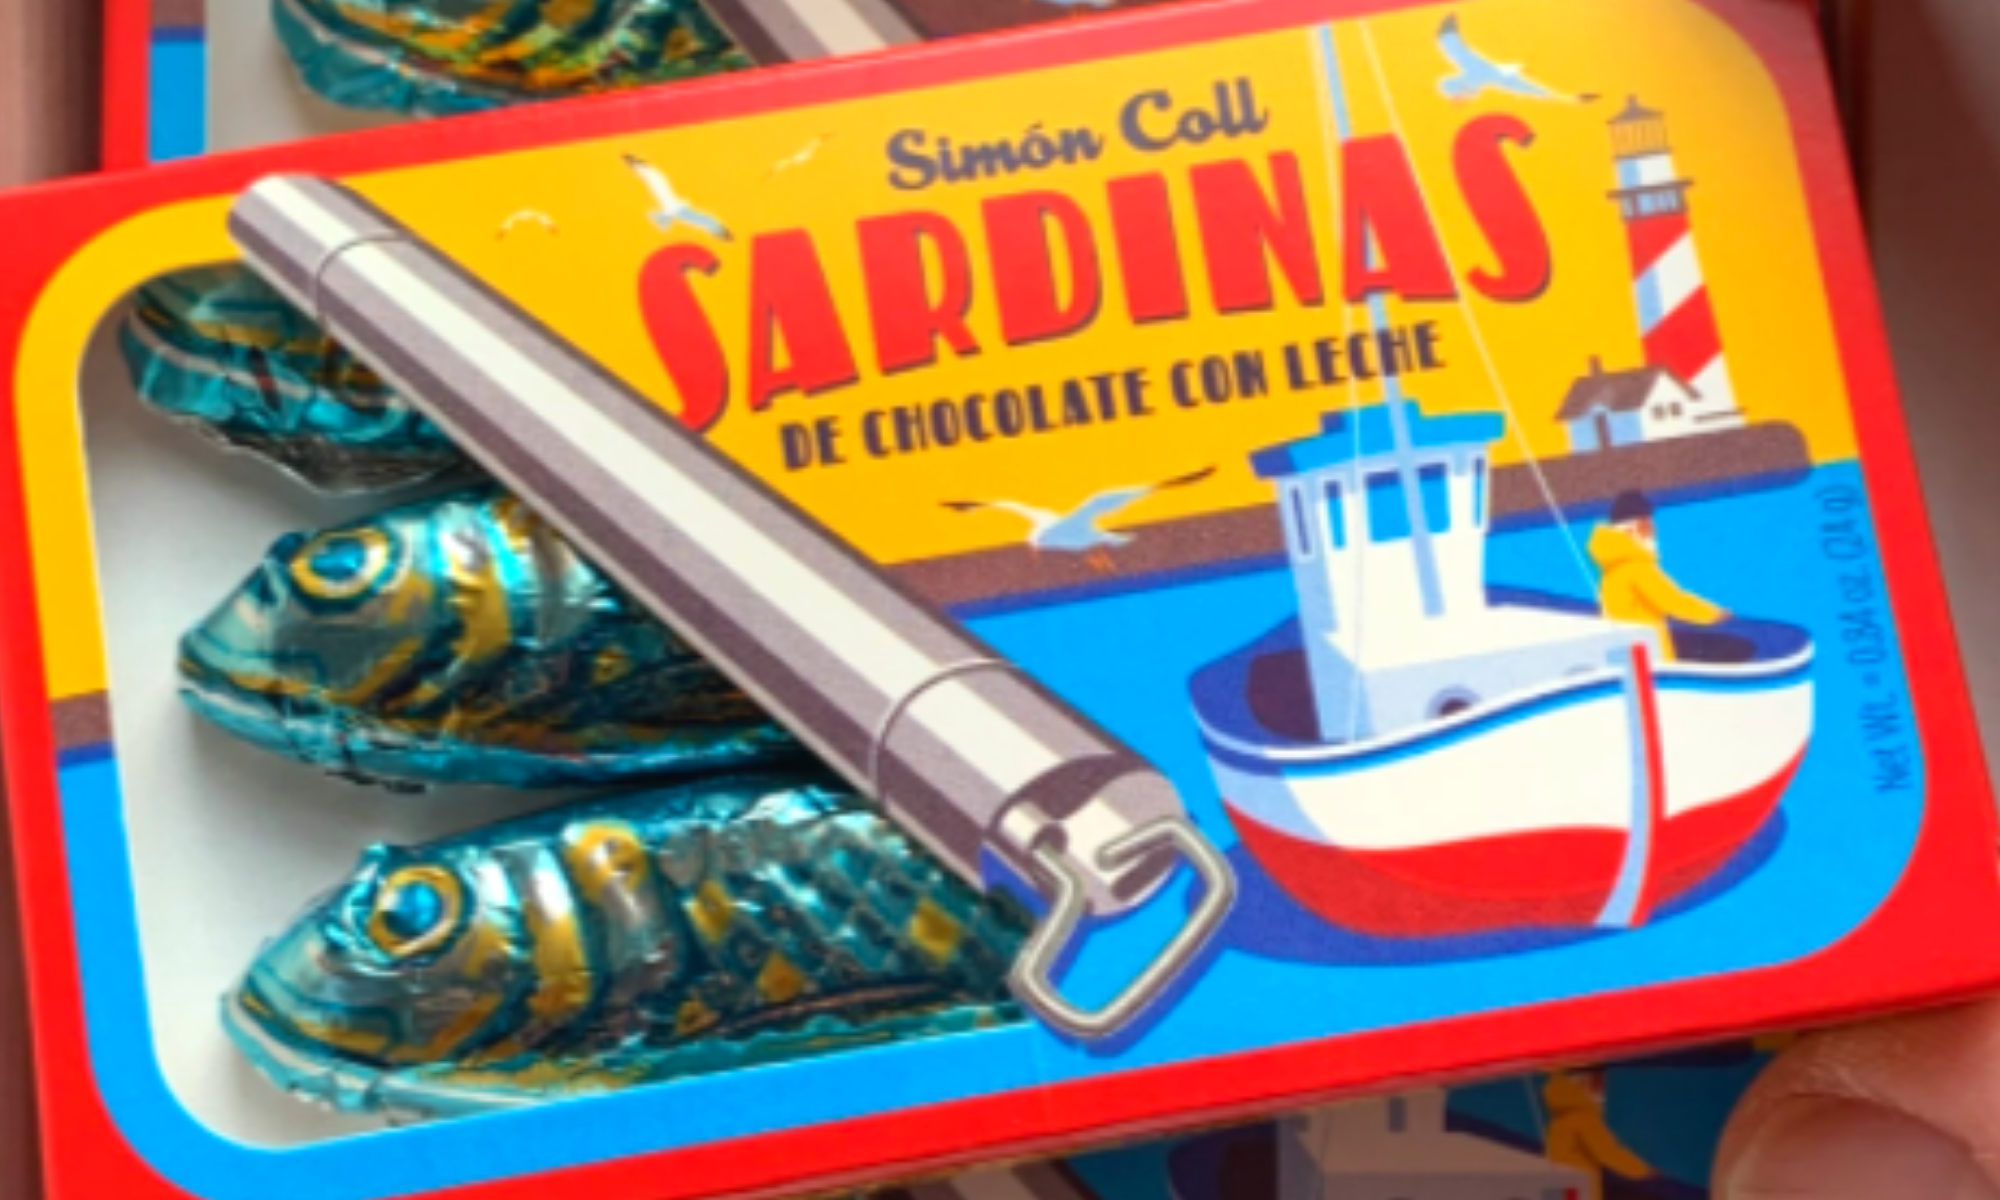 Header image of sardinas chocolate